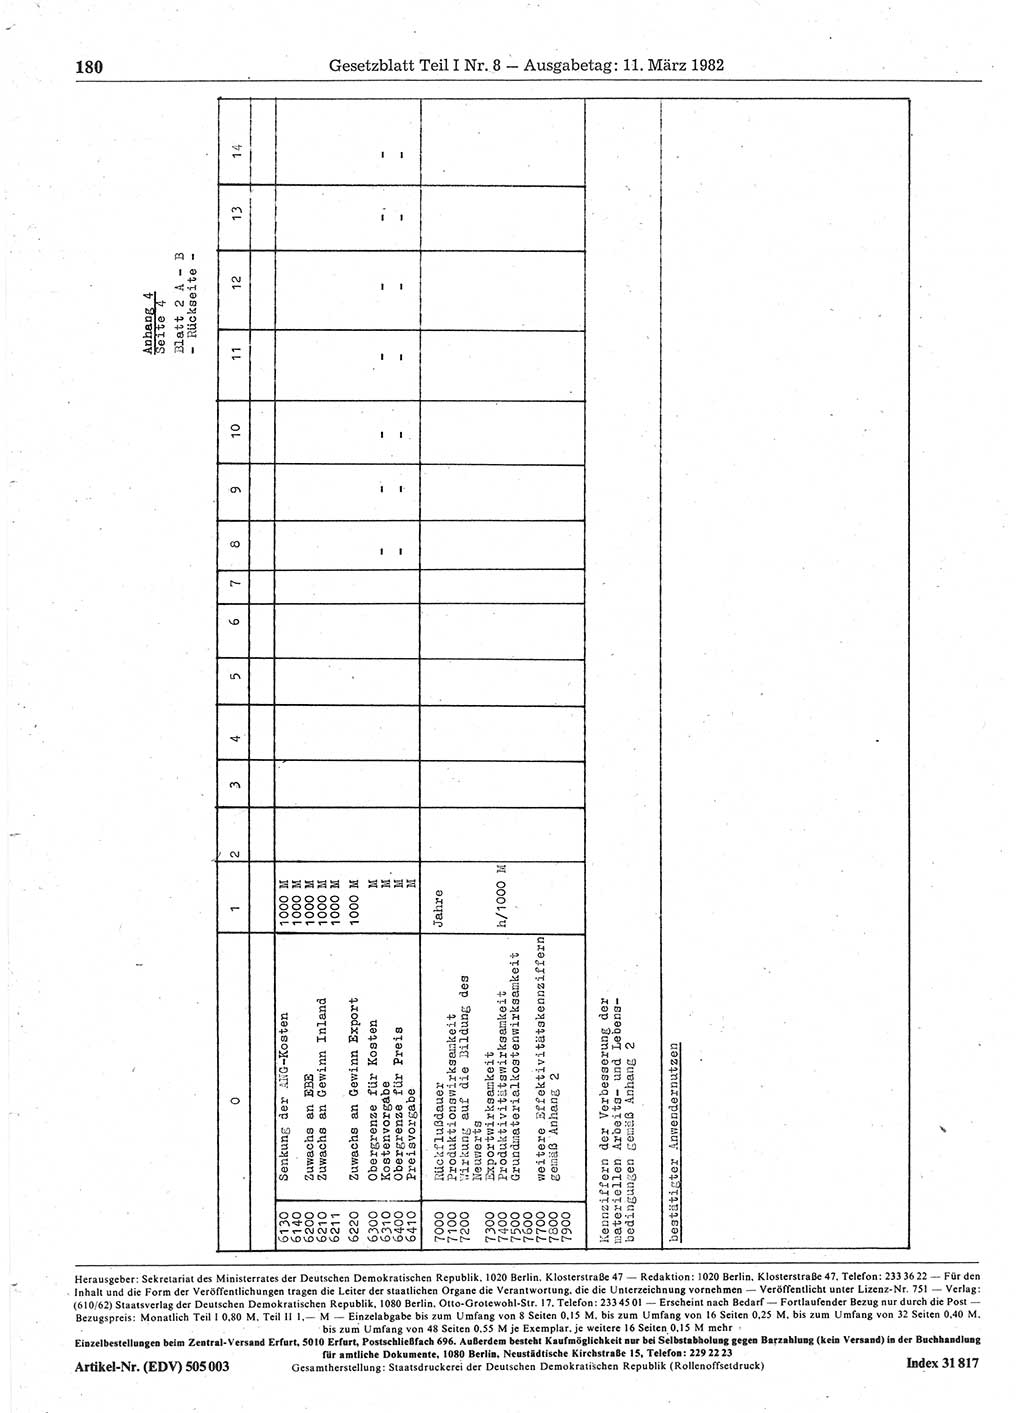 Gesetzblatt (GBl.) der Deutschen Demokratischen Republik (DDR) Teil Ⅰ 1982, Seite 180 (GBl. DDR Ⅰ 1982, S. 180)